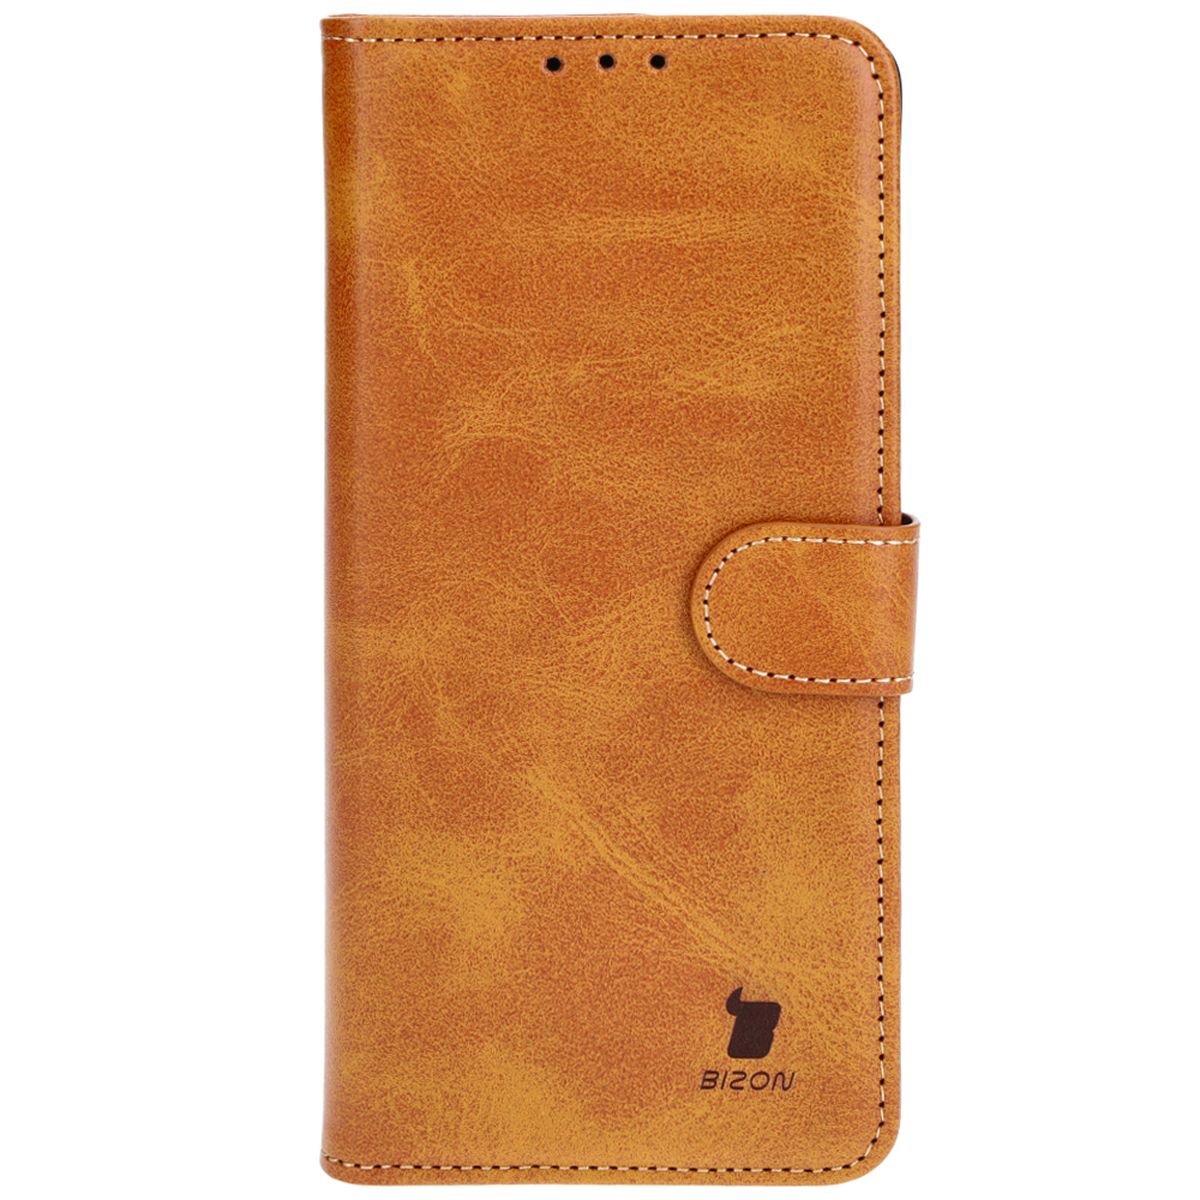 Schutzhülle für Xiaomi Redmi Note 13 Pro+ 5G, Bizon Case Pocket, Braun